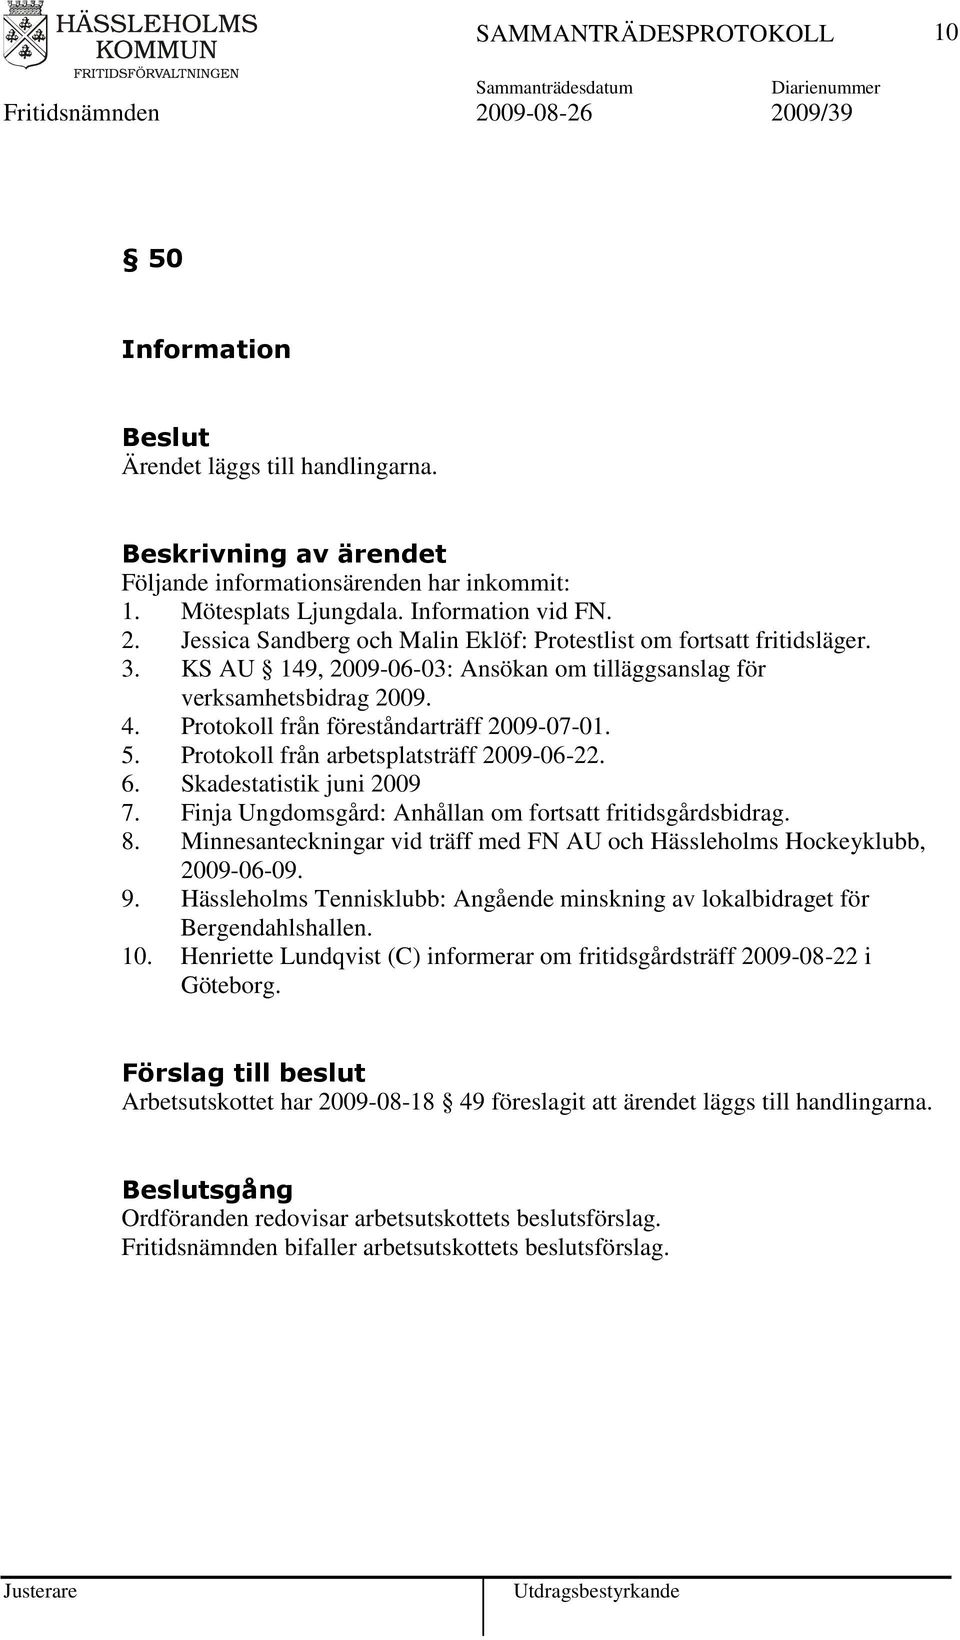 Skadestatistik juni 2009 7. Finja Ungdomsgård: Anhållan om fortsatt fritidsgårdsbidrag. 8. Minnesanteckningar vid träff med FN AU och Hässleholms Hockeyklubb, 2009-06-09. 9.